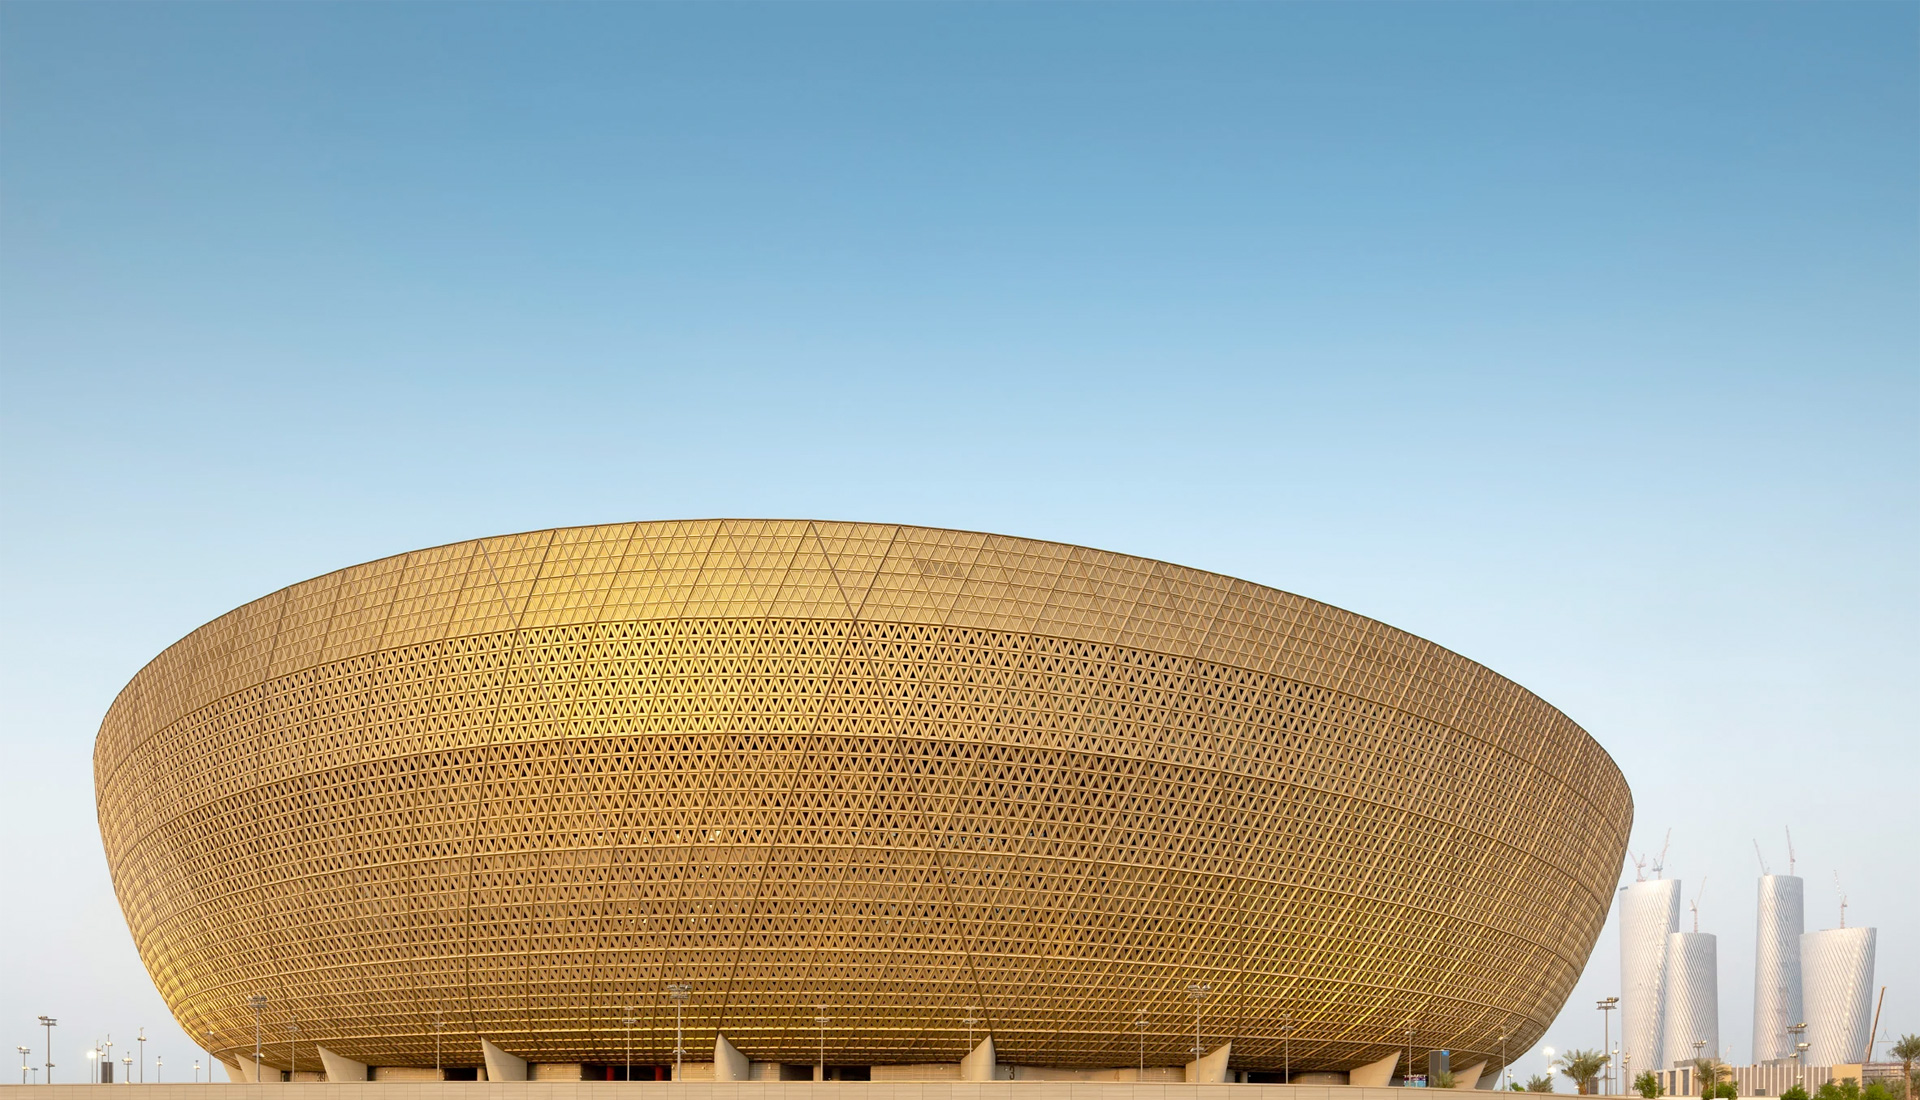 Чемпионат мира по футболу в Катаре: 8 стадионов